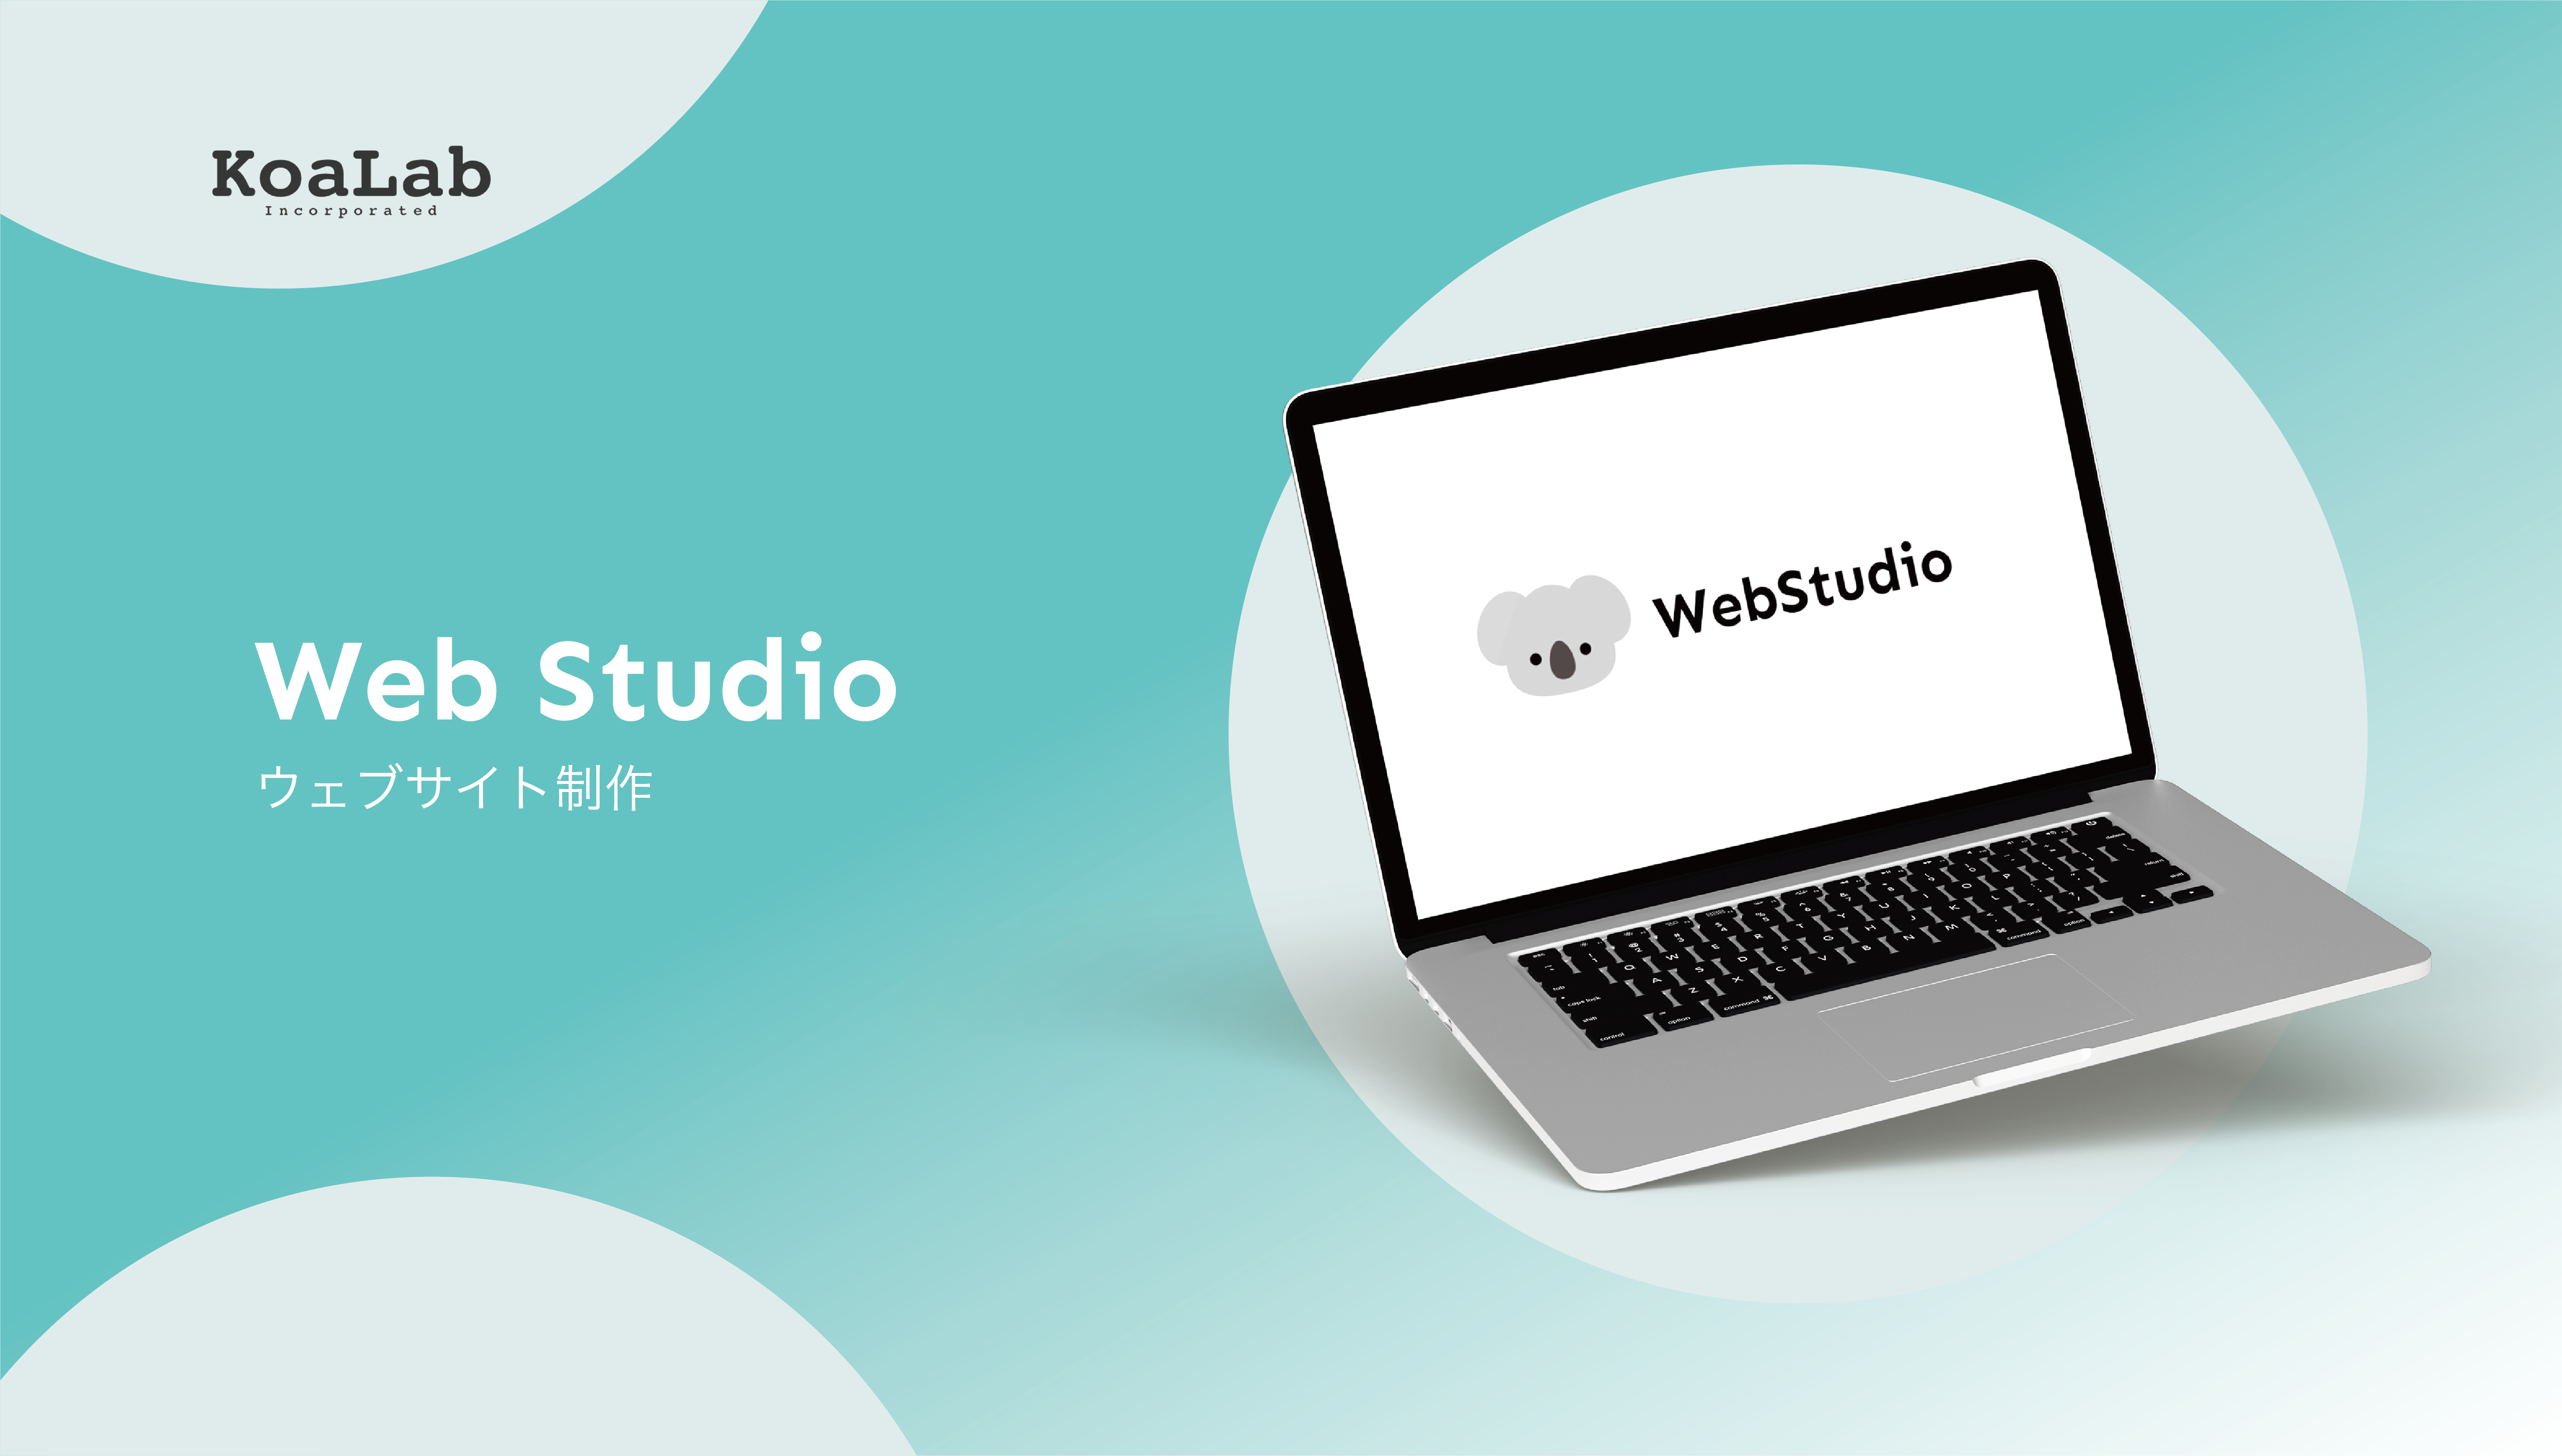 オリジナルデザインのウェブサイト制作を支援するサービス 「Web Studio」を8月23日より提供開始